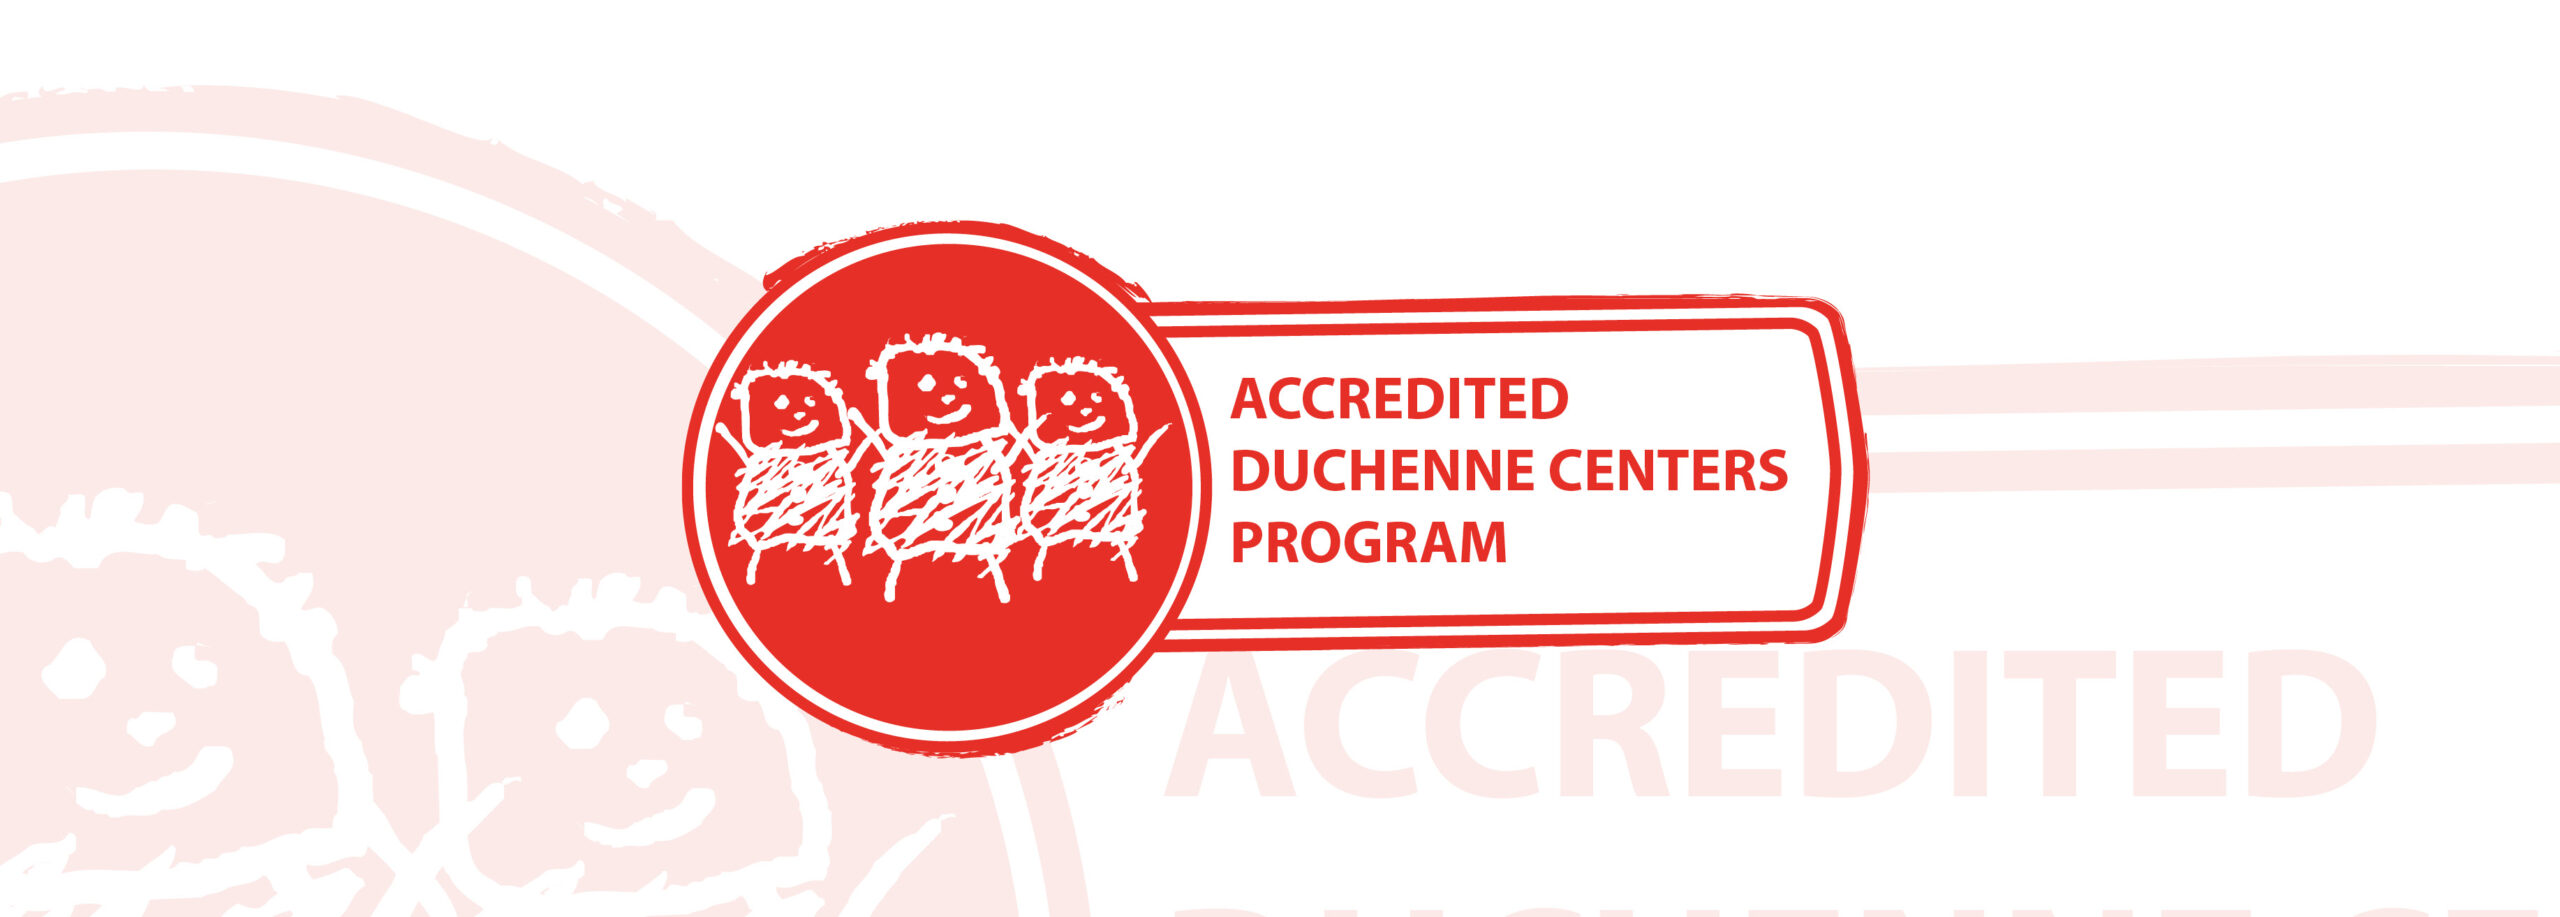 World Duchenne Organization announces Accredited Duchenne Centers Program